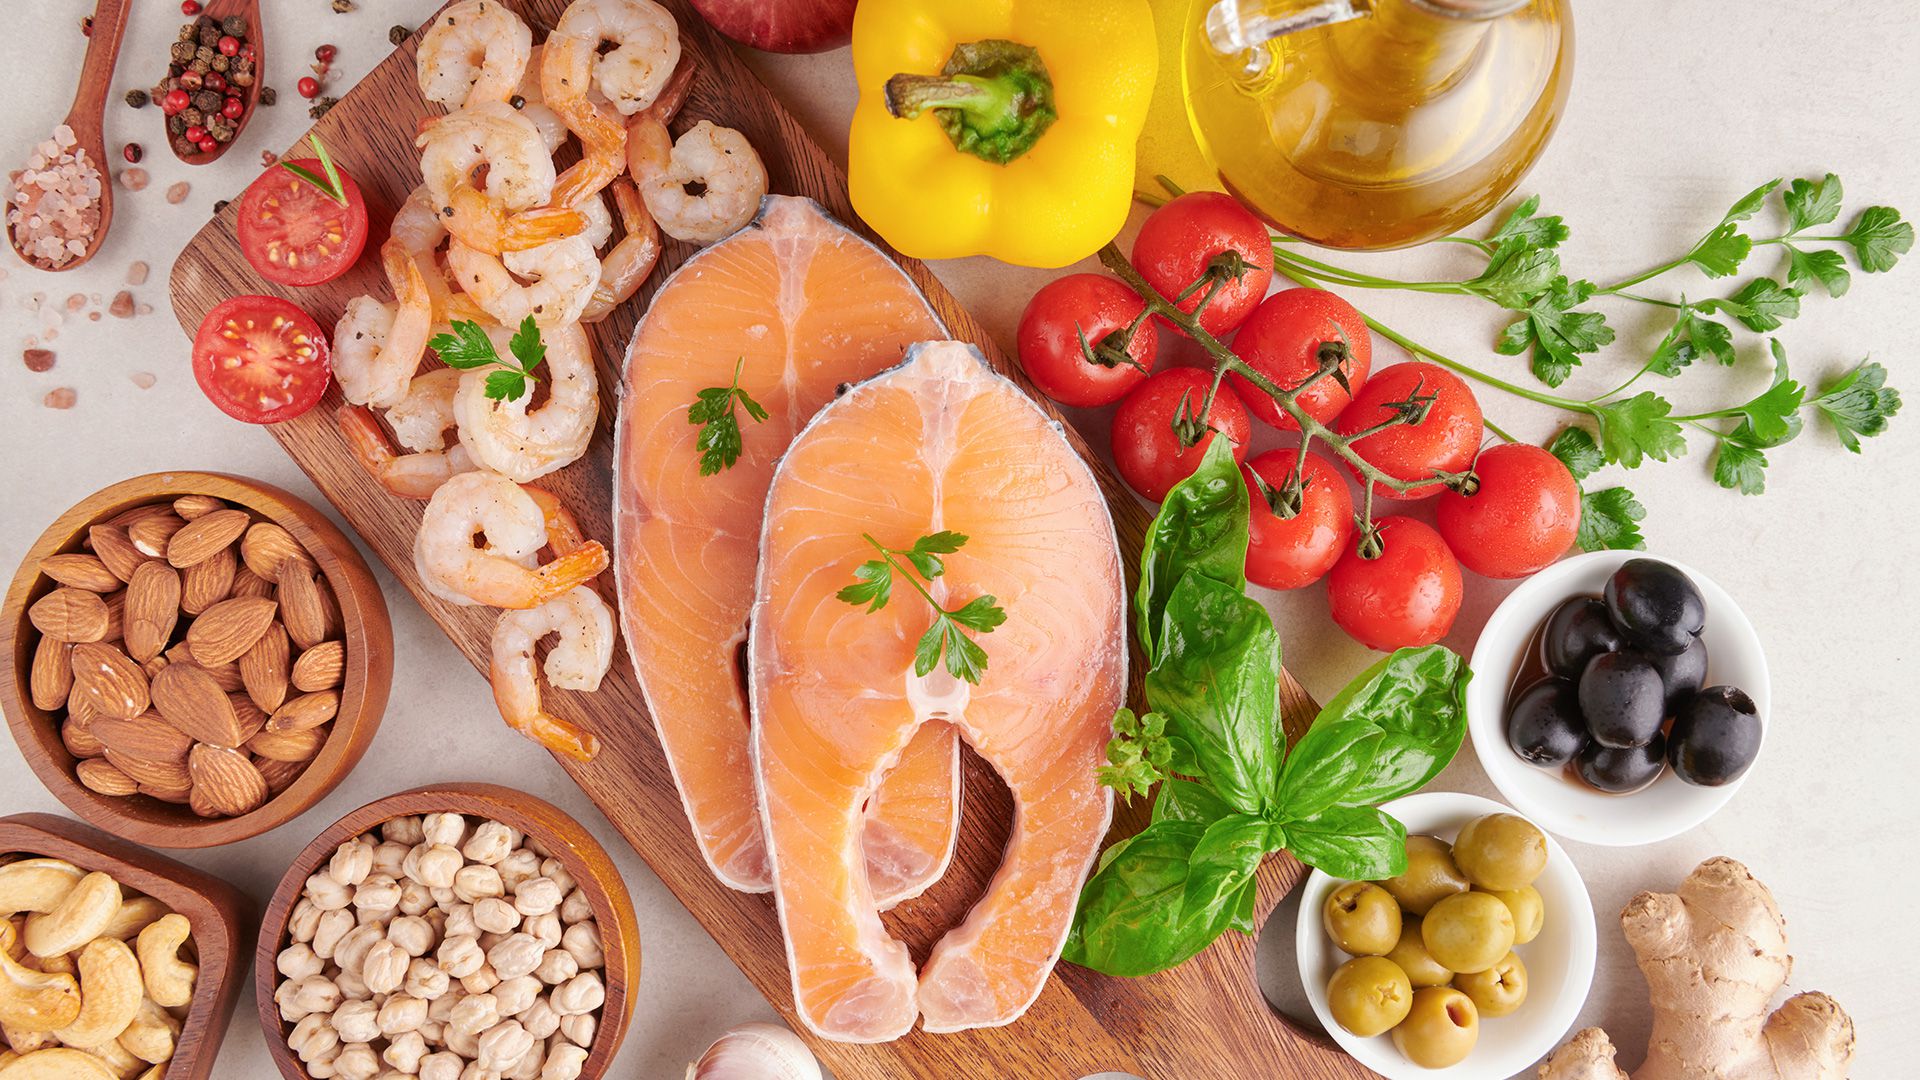 La dieta mediterránea es un patrón de alimentación basado en los hábitos de italianos, griegos y otros habitantes de la región (Freepik)